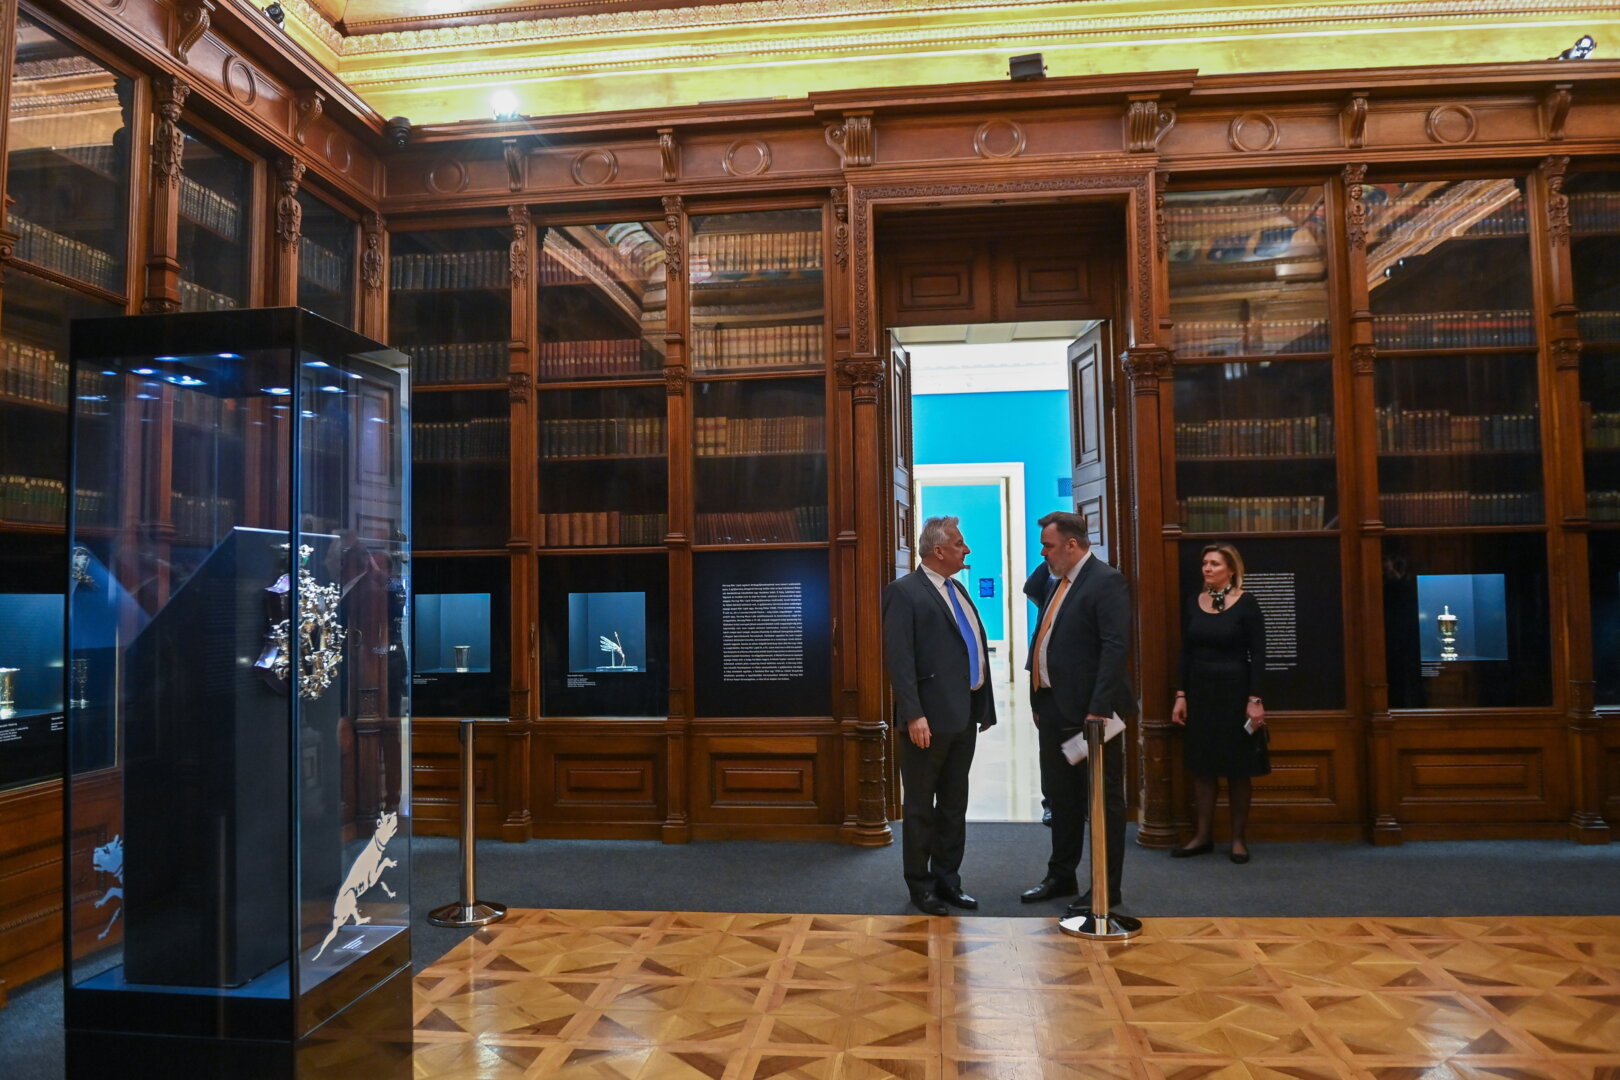 Semjén Zsolt miniszterelnök-helyettes (elöl, b), mellette Latorcai Csaba, az Emberi Erőforrások Minisztériumának közigazgatási államtitkára (k) és L. Simon László, a Magyar Nemzeti Múzeum (MNM) főigazgatója (j2) az MNM látványtárában a Nemzeti Múzeum megújult arculatát és további újdonságait bemutató sajtóbemutatóval egybekötött megnyitó napján, 2022. március 21-én. Az intézményben ismét megnyílt a Herzog-ezüstöket felvonultató emblematikus Széchényi-terem, valamint a látványtár. - forrás: MTI/Illyés Tibor